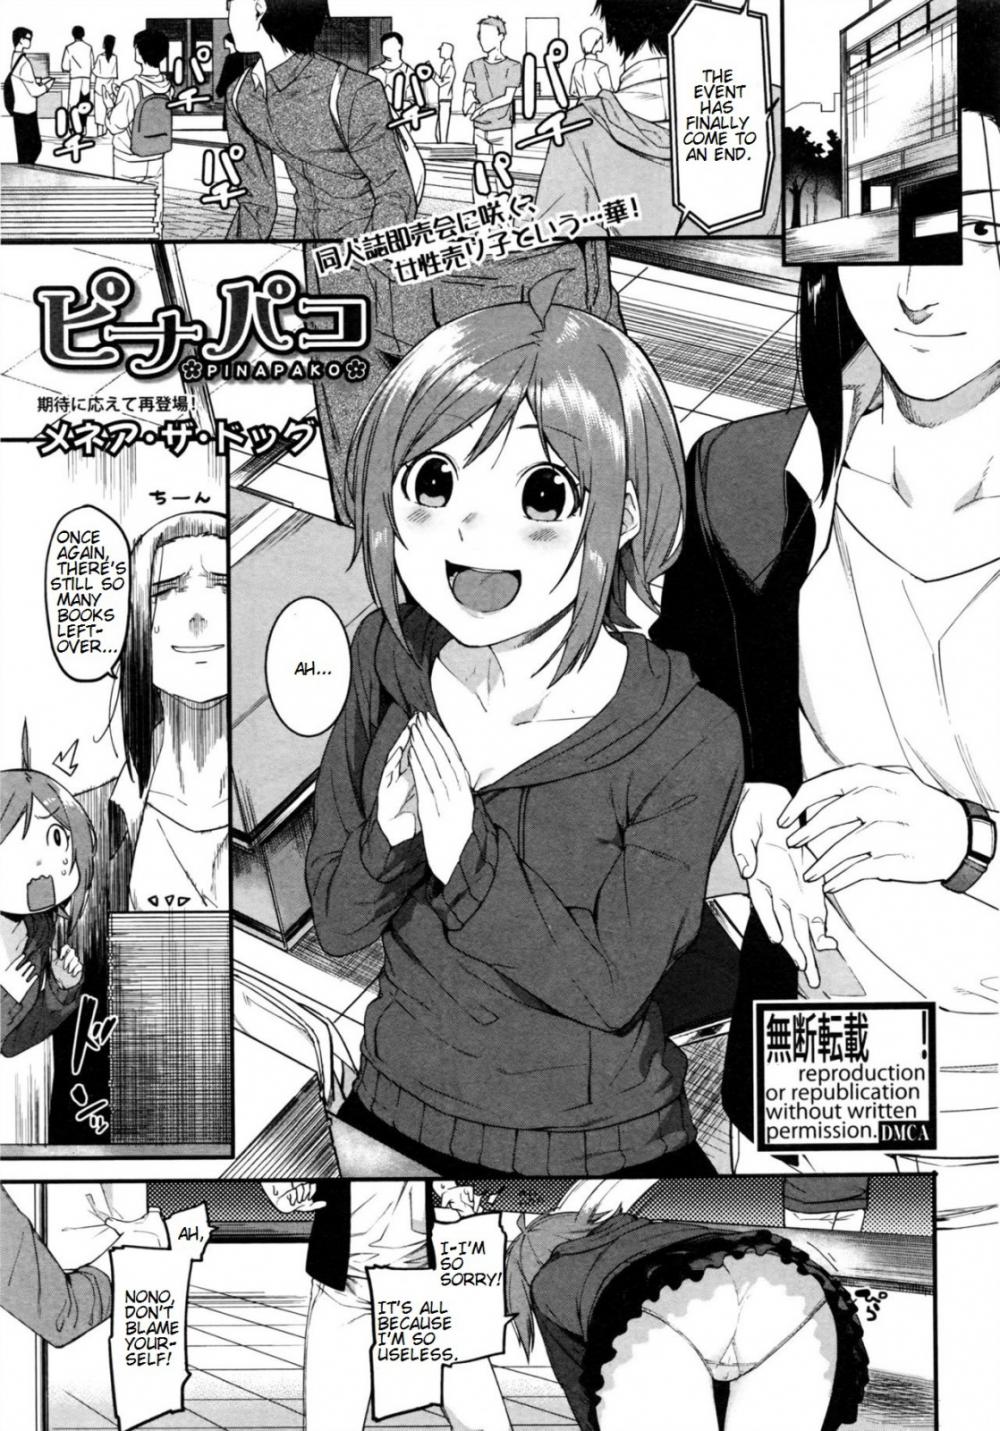 Hentai Manga Comic-PINAPAKO-Read-1